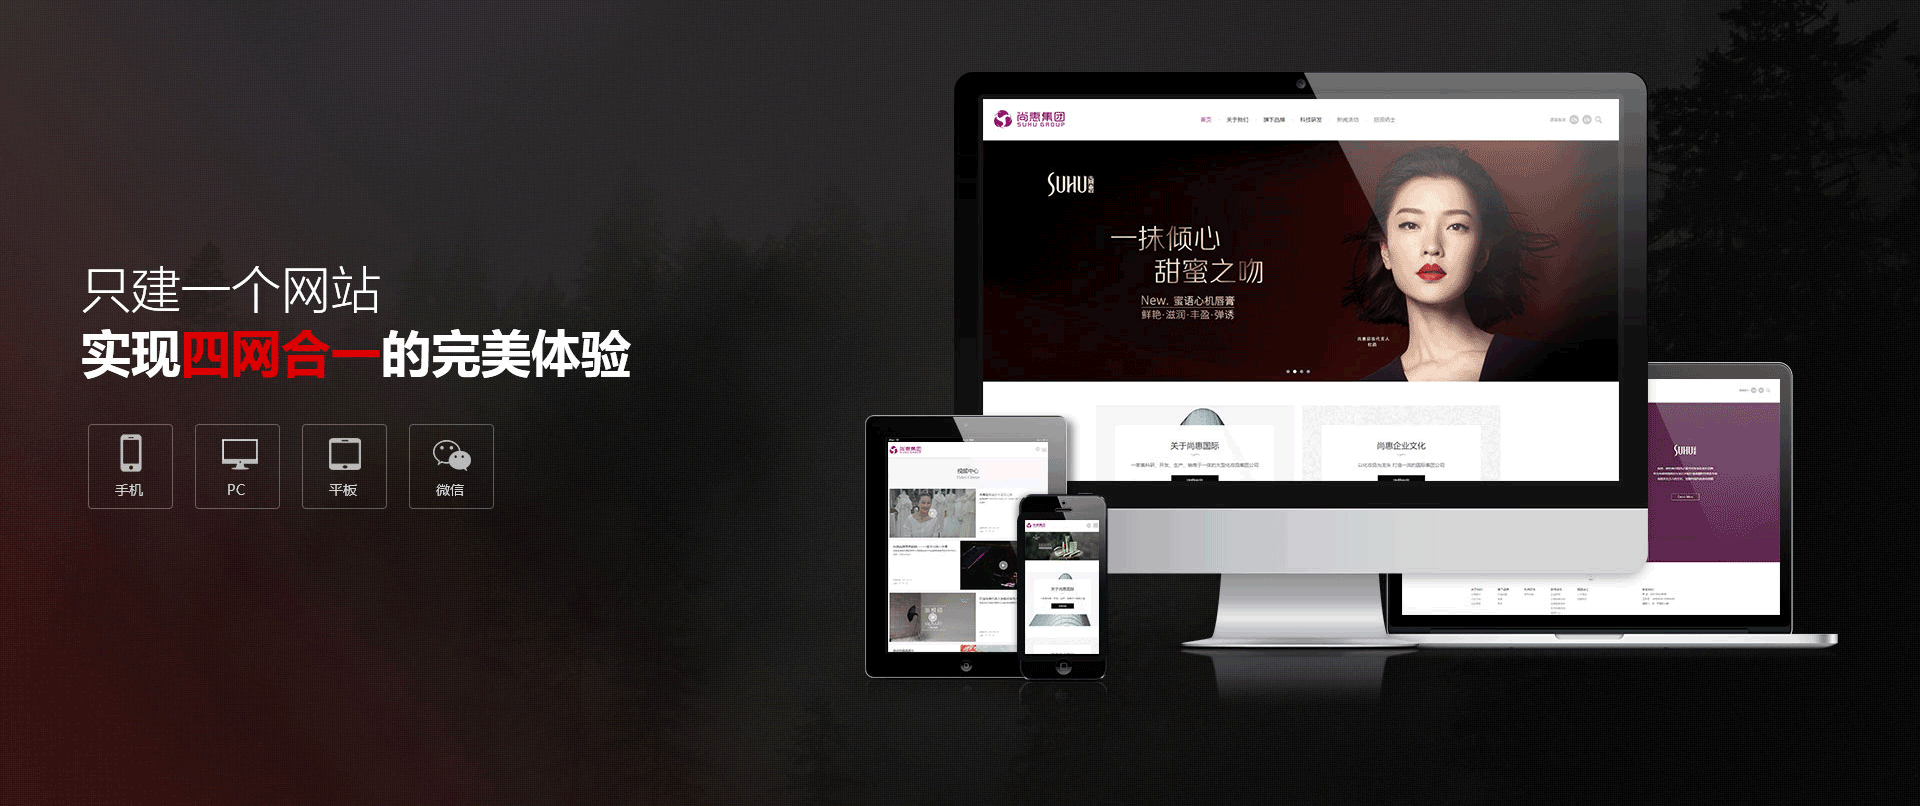 河南新社信息技术有限公司